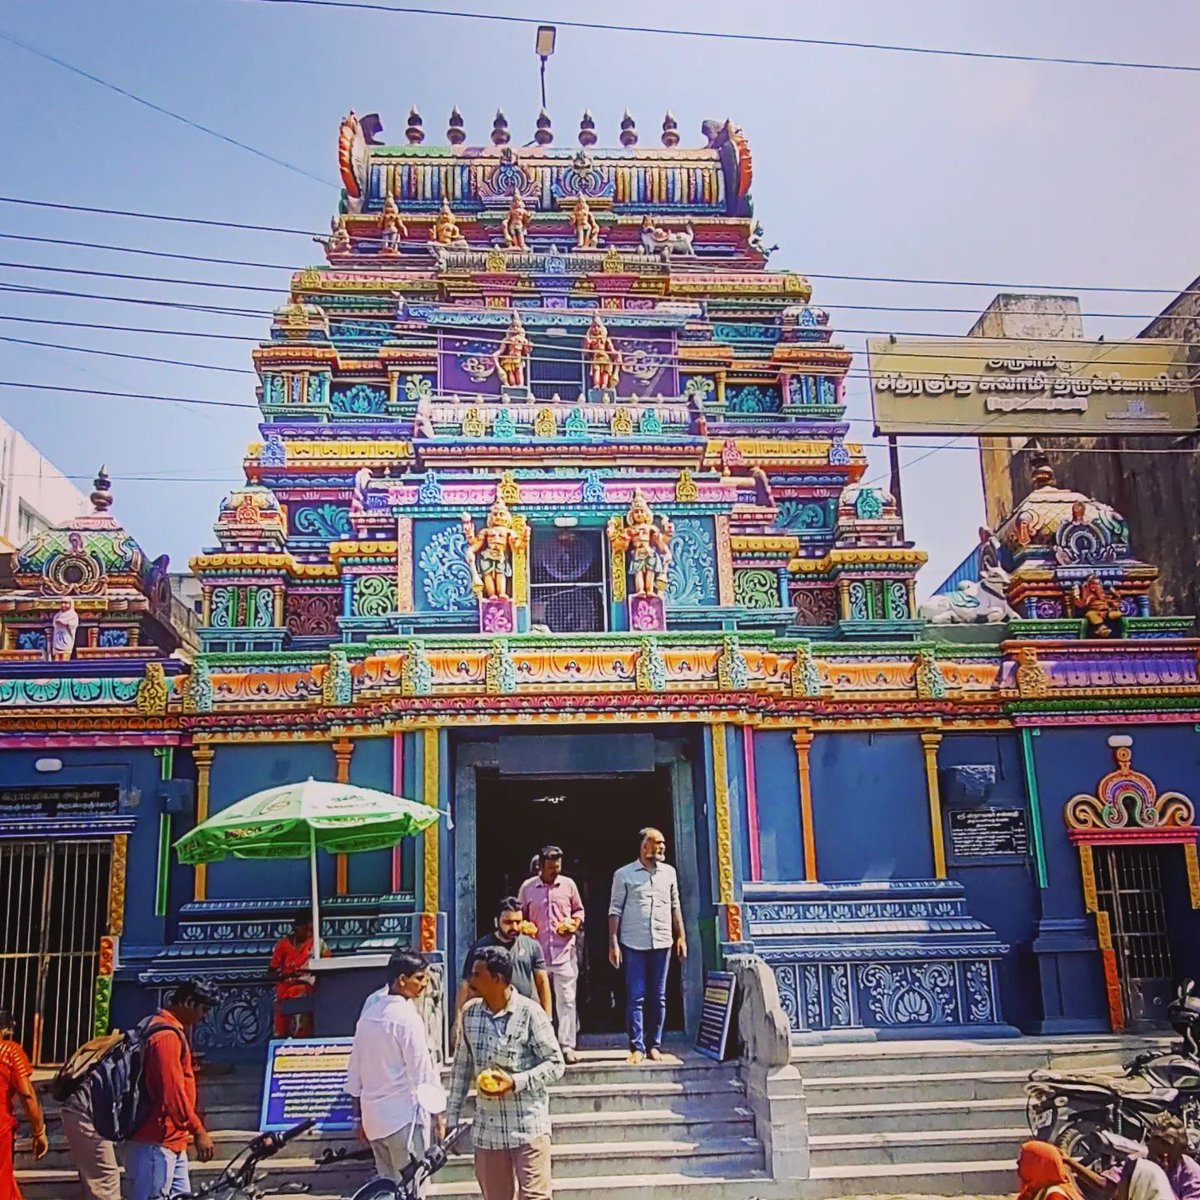 10) Shri Chitragupta Swamy Temple